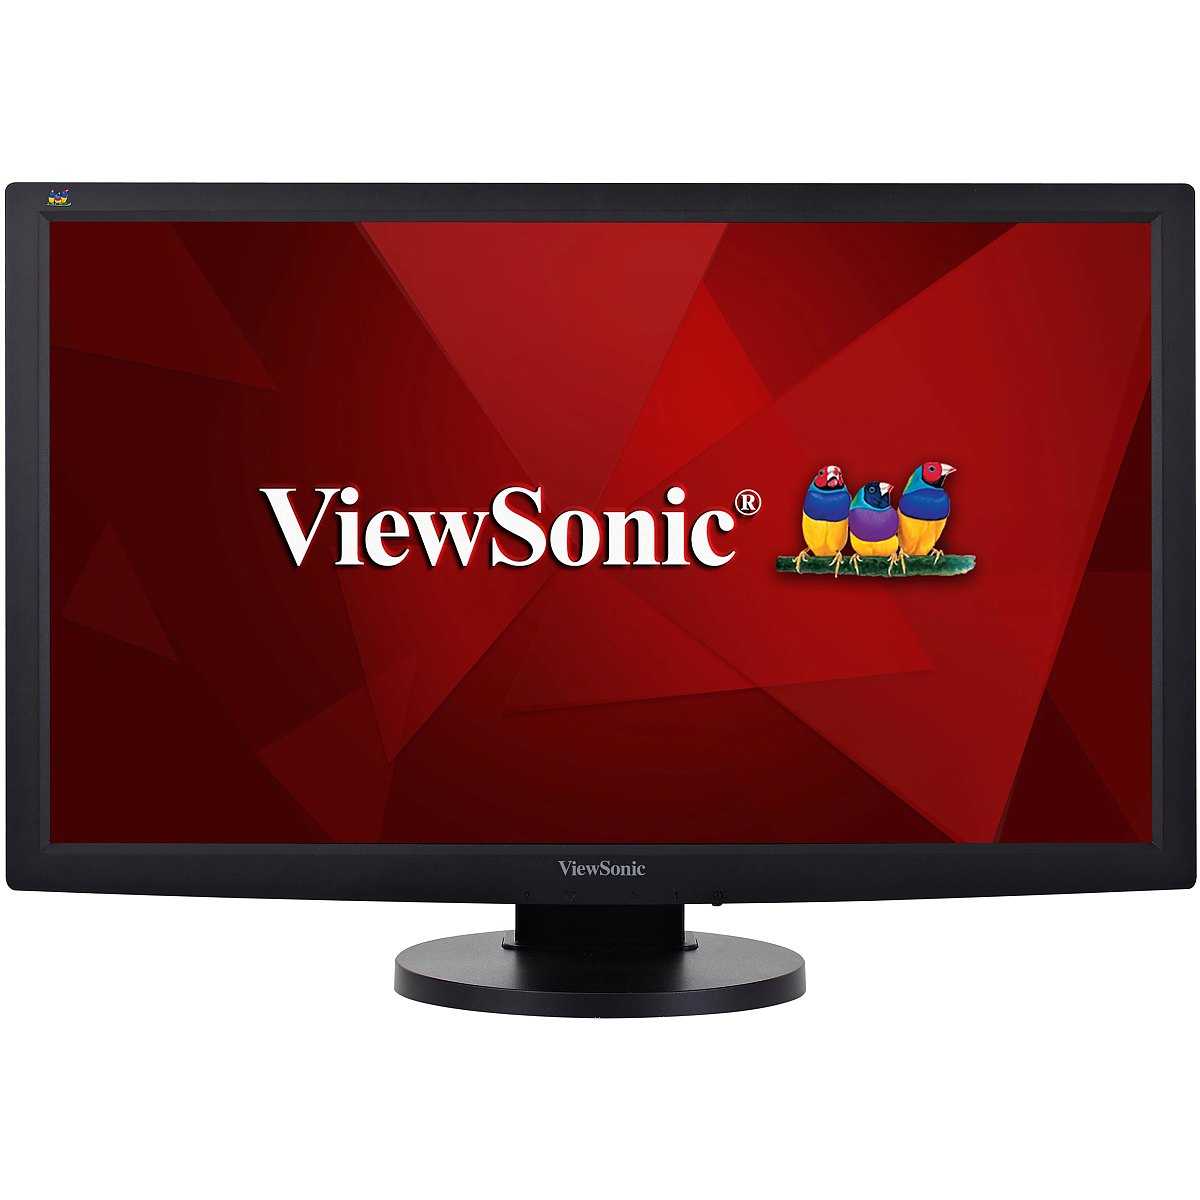 Жк монитор 19.5" viewsonic vg2039m-led — купить, цена и характеристики, отзывы